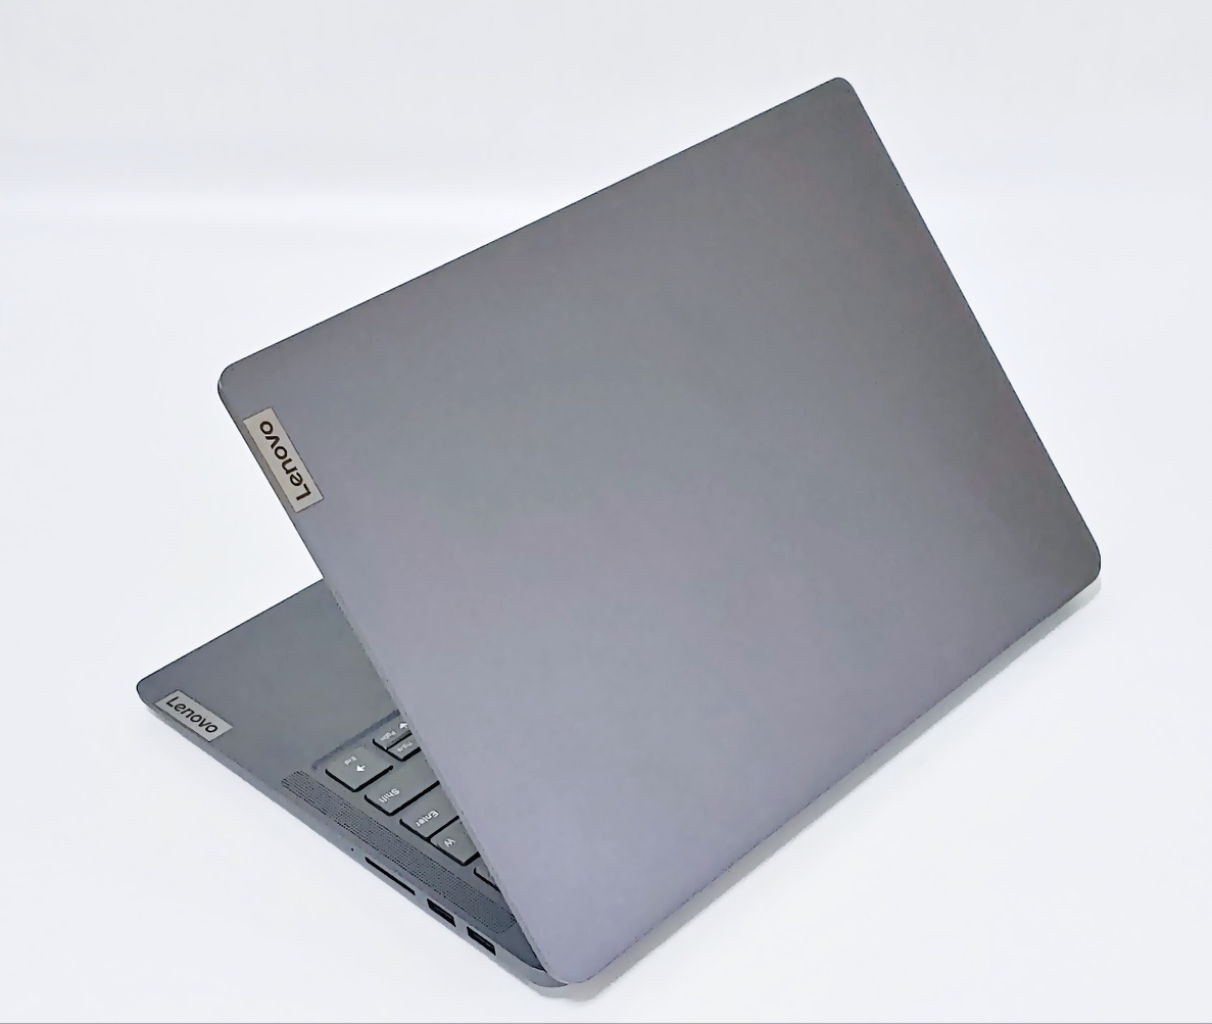 레노버 MX450 라이젠5 14인치 고성능 노트북 PC